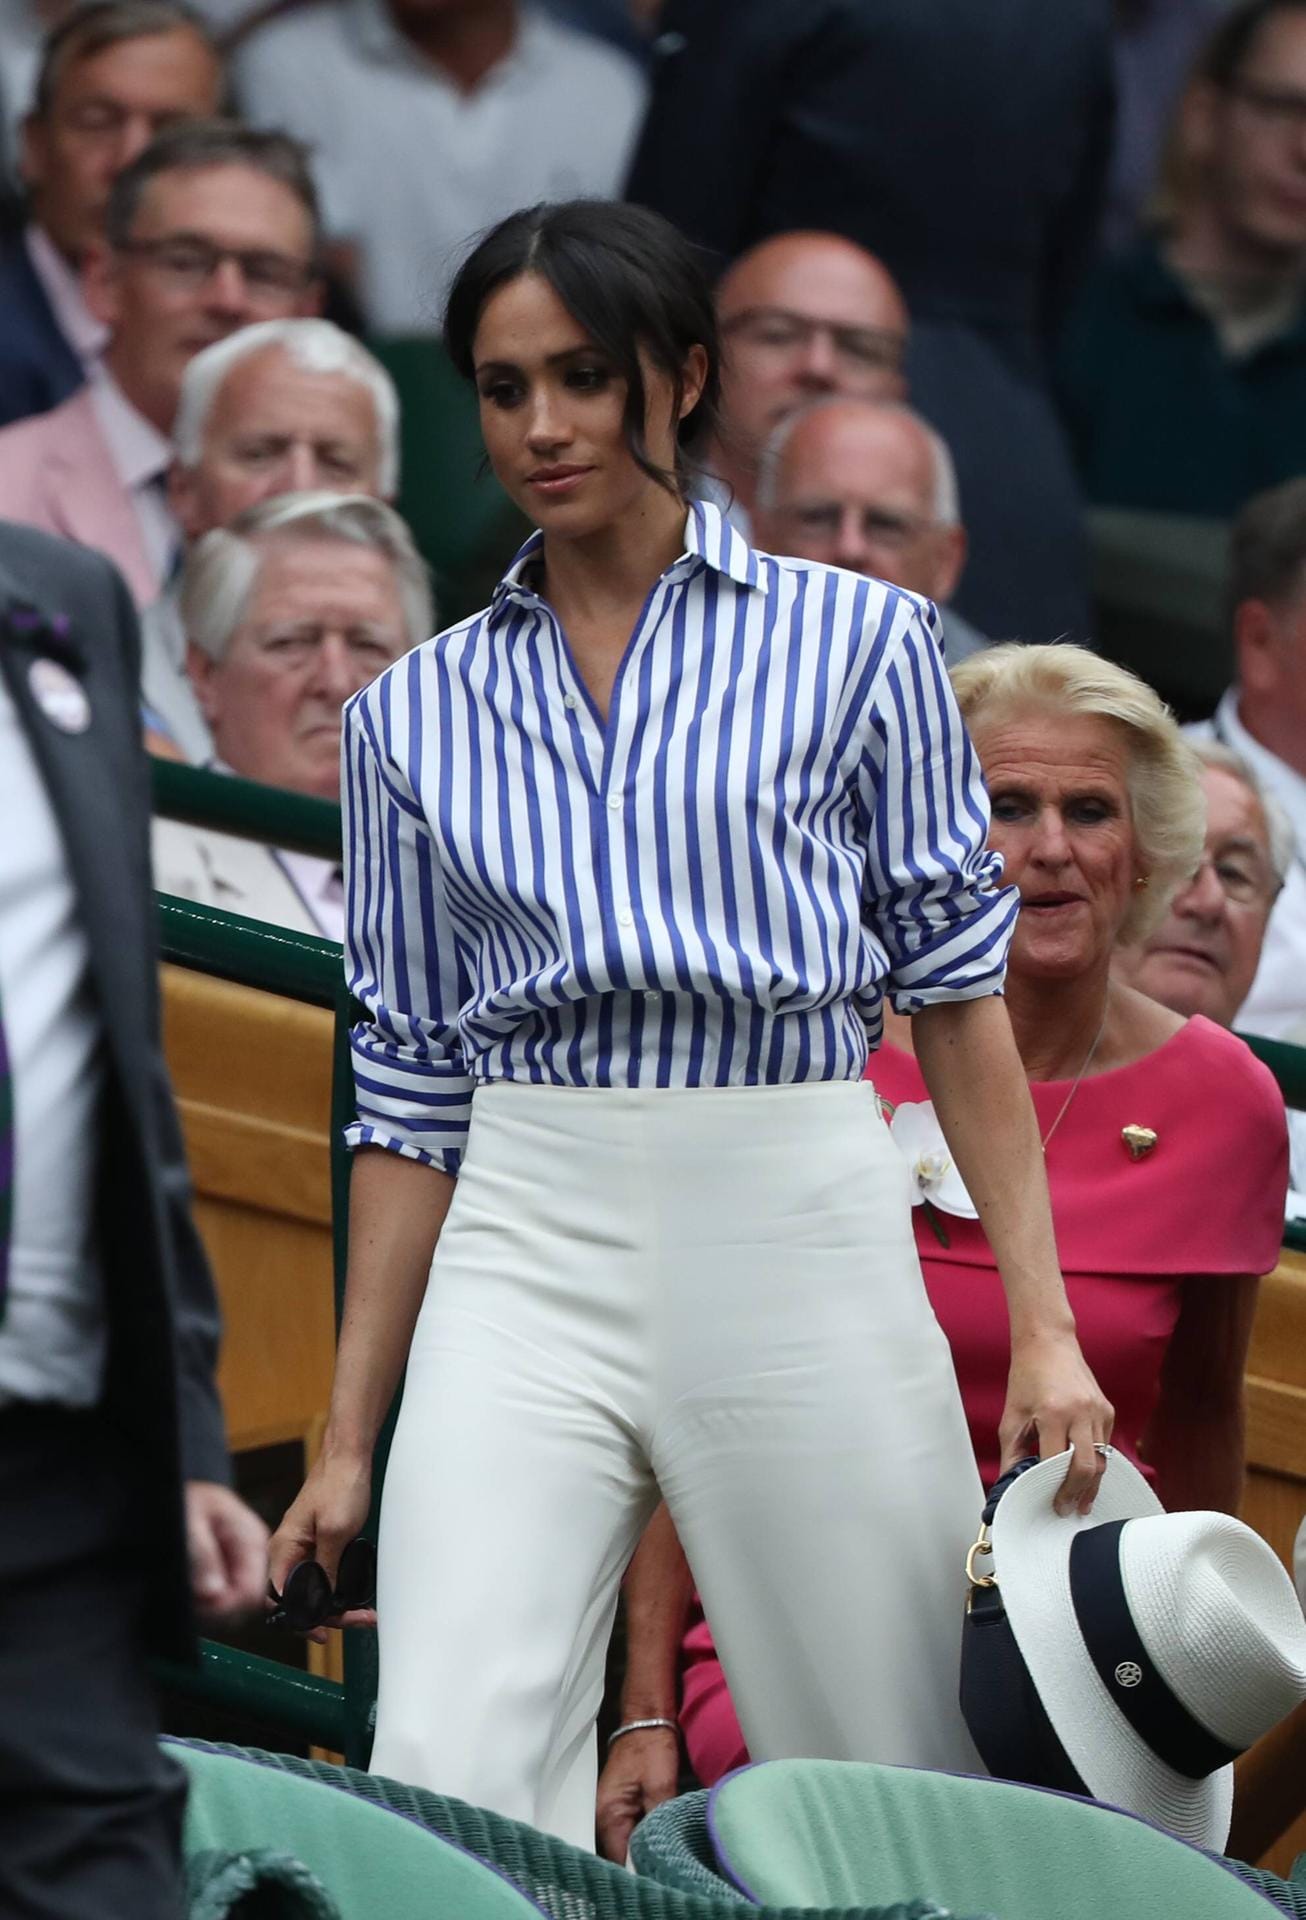 Herzogin Meghan wählte zum Wimbledon-Finale der Damen im Juli 2018 eine gestreifte Bluse zur weißen Hose.